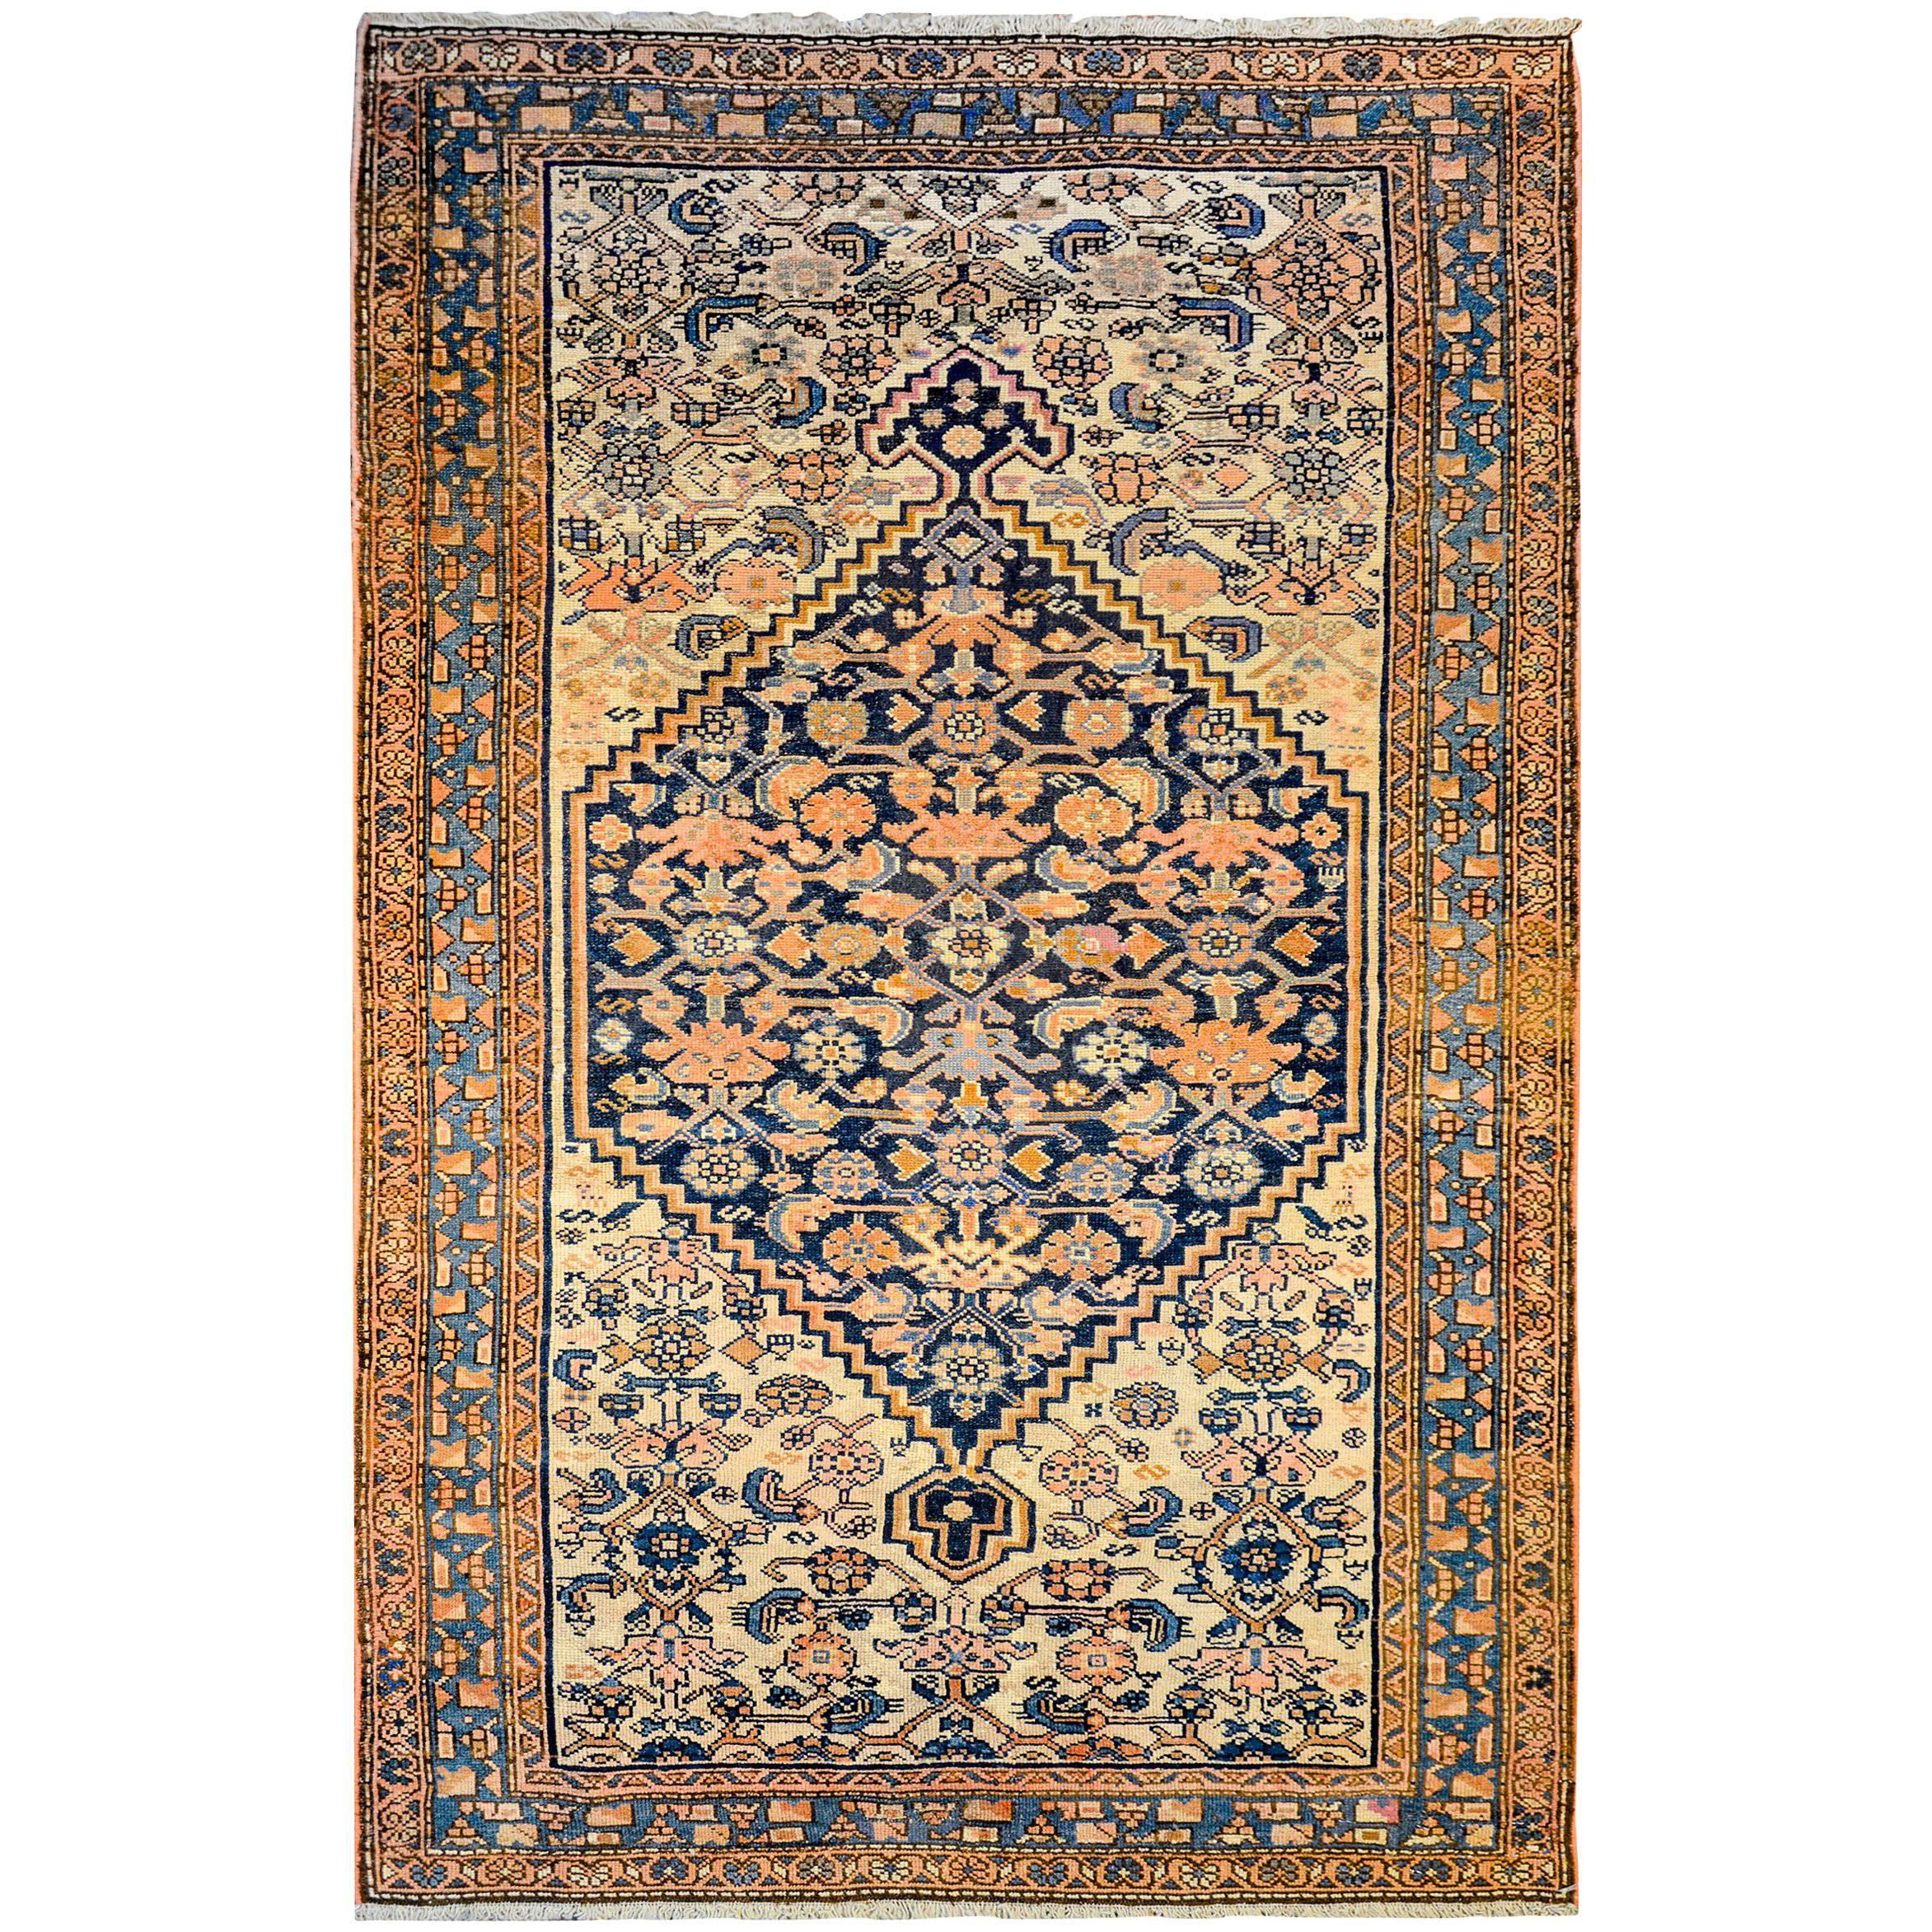 Azari-Teppich aus dem frühen 20. Jahrhundert, Wunderschön